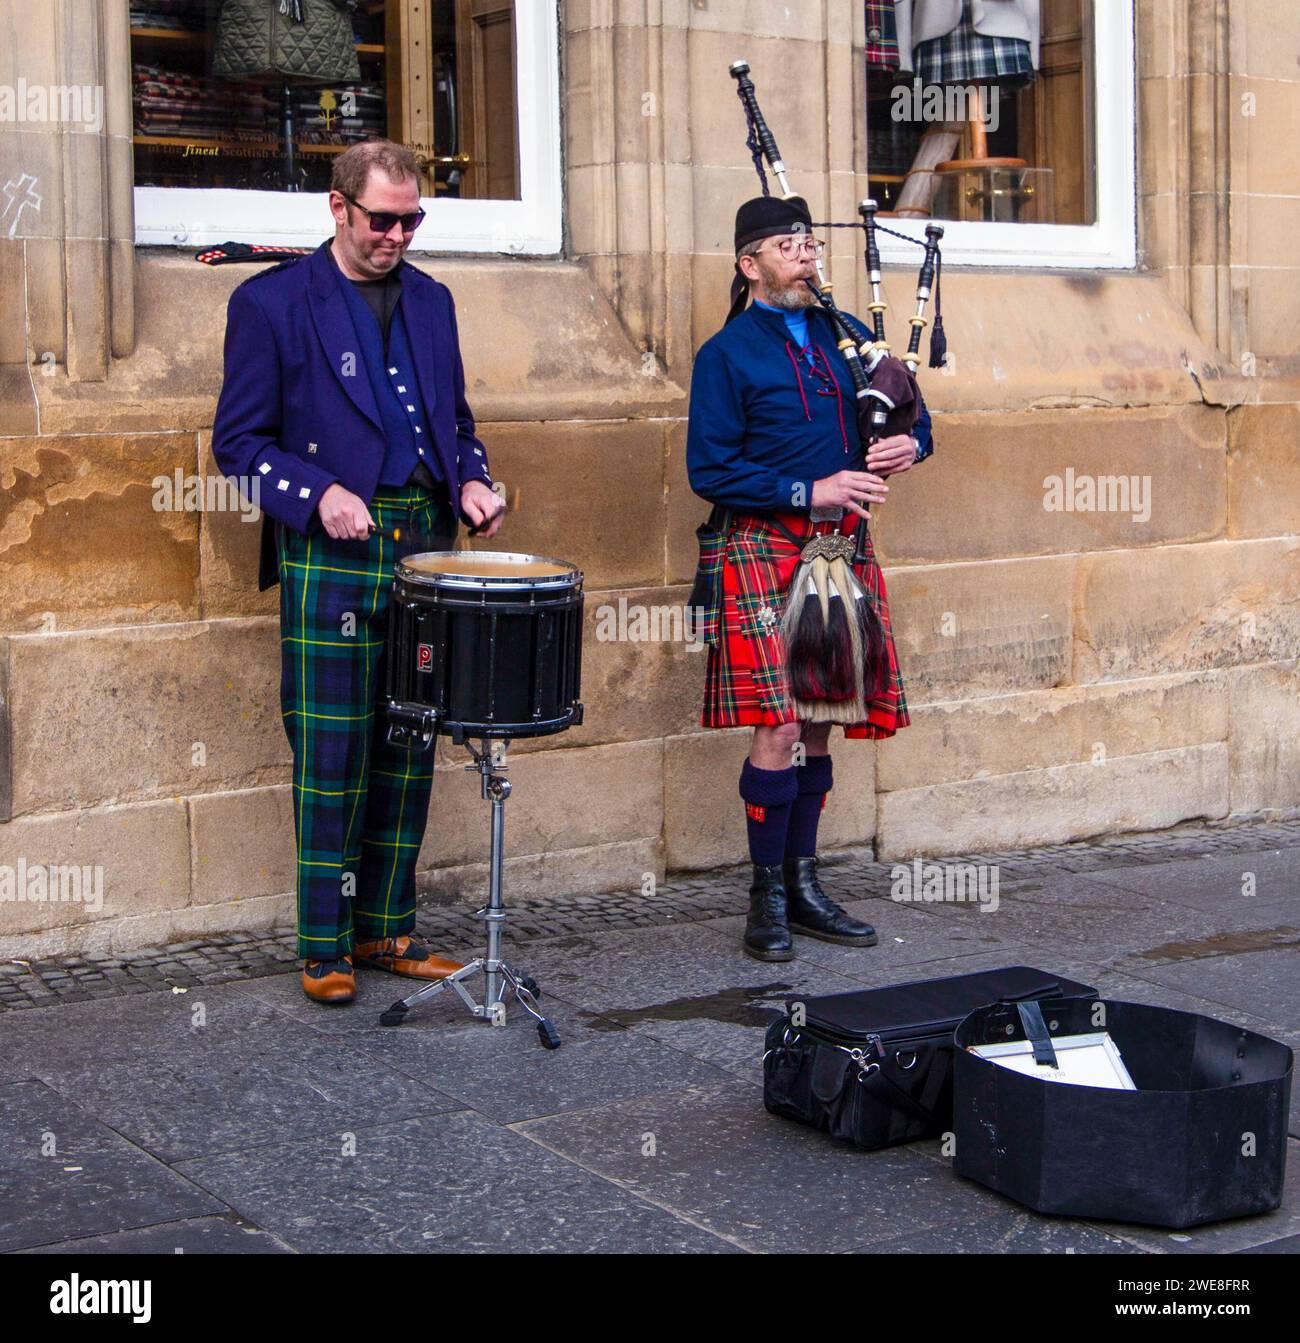 Musiciens de rue jouant, l'un de la cornemuse et l'autre jouant d'un tambour-piège dans un cadre urbain Royal Mile Edinburgh. Banque D'Images